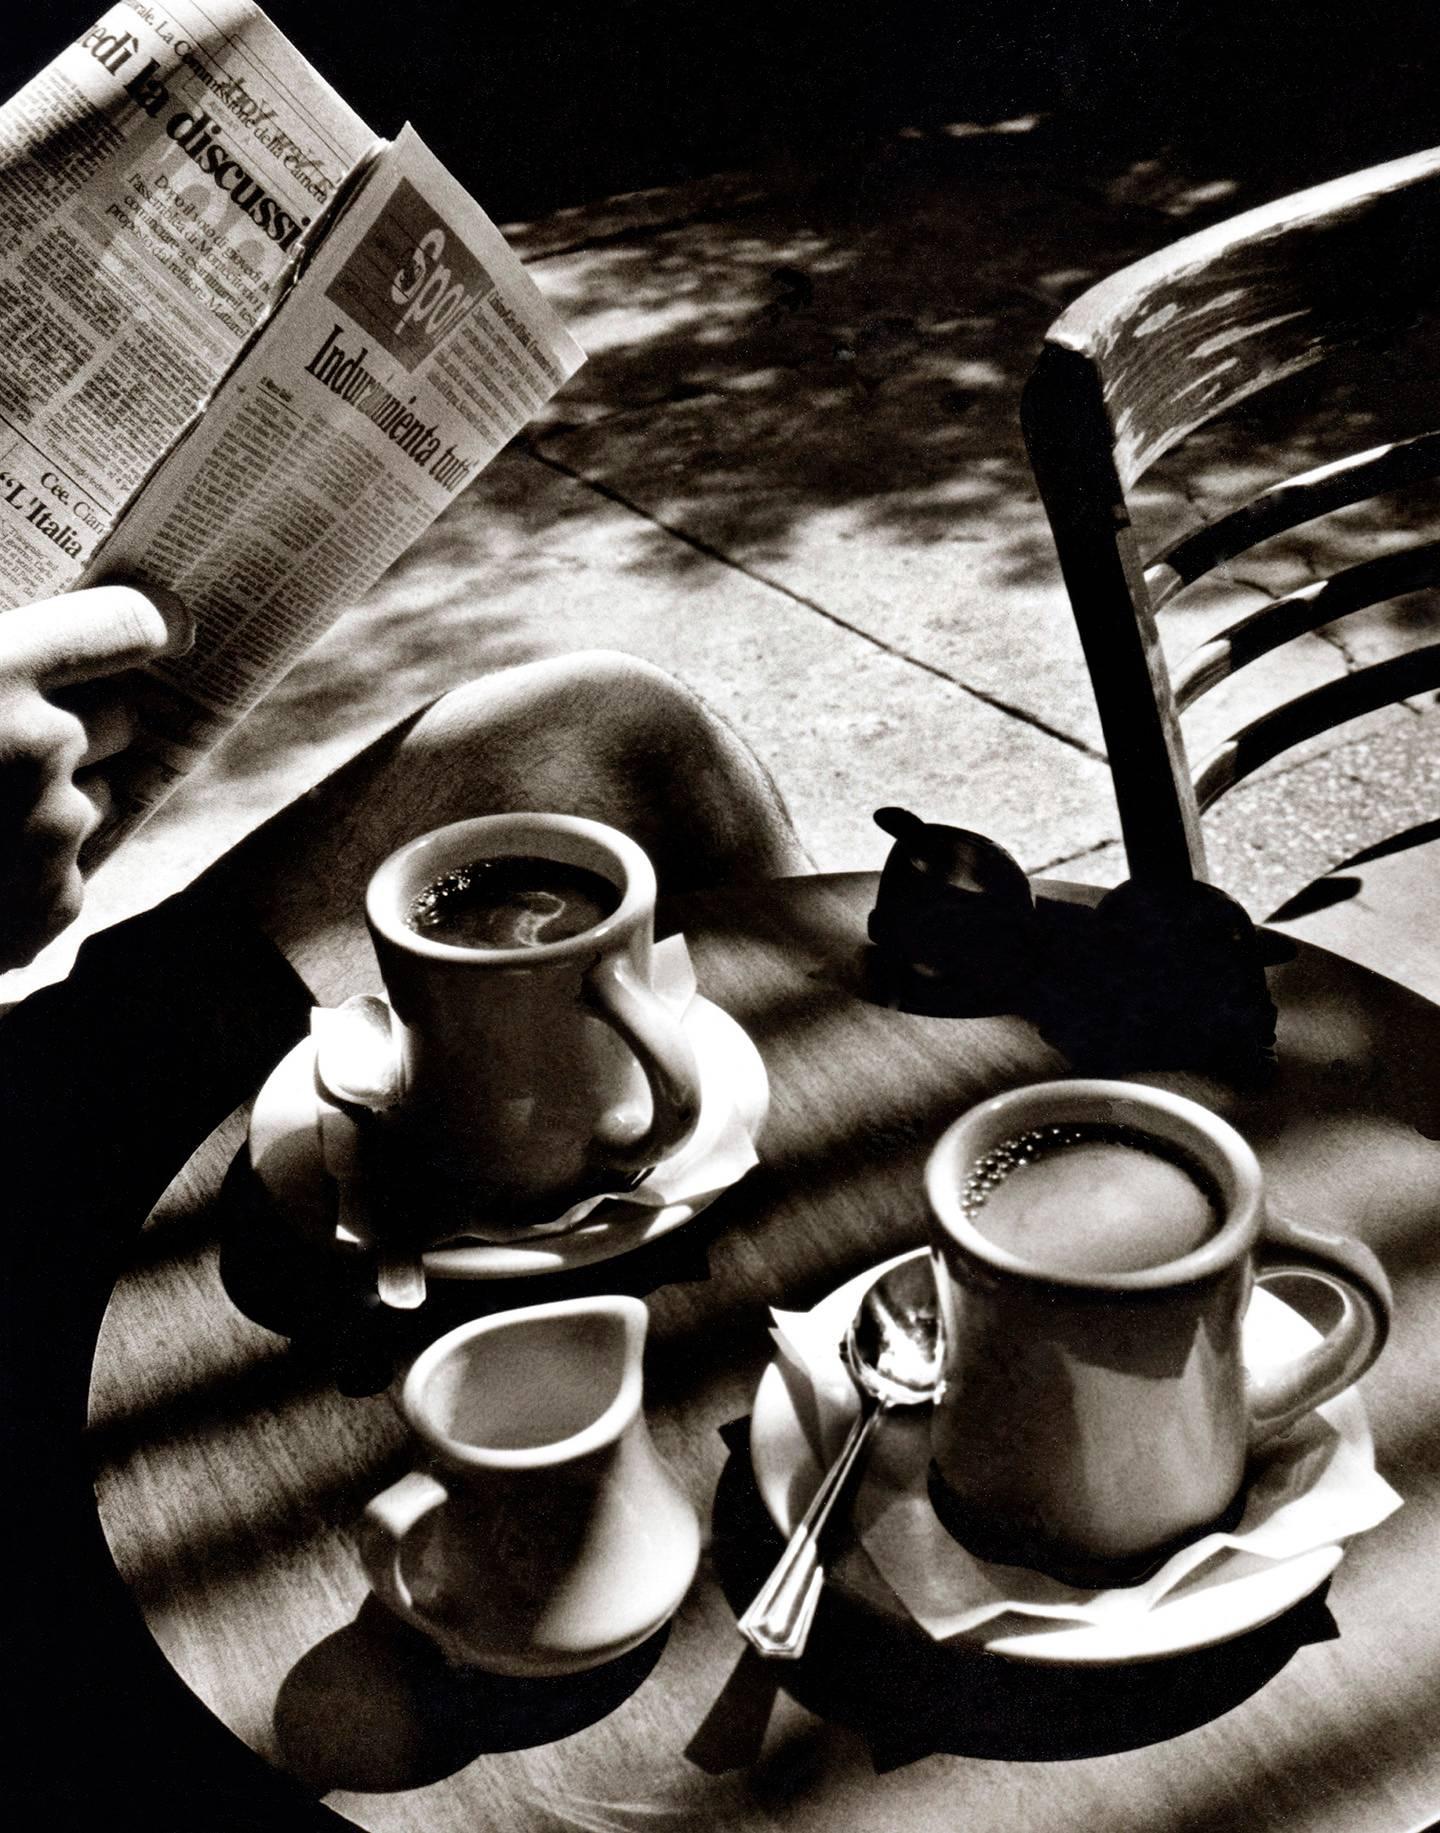 Fernando Natalici Still-Life Photograph - Sunday Morning Coffee Photograph New York, NY 1996